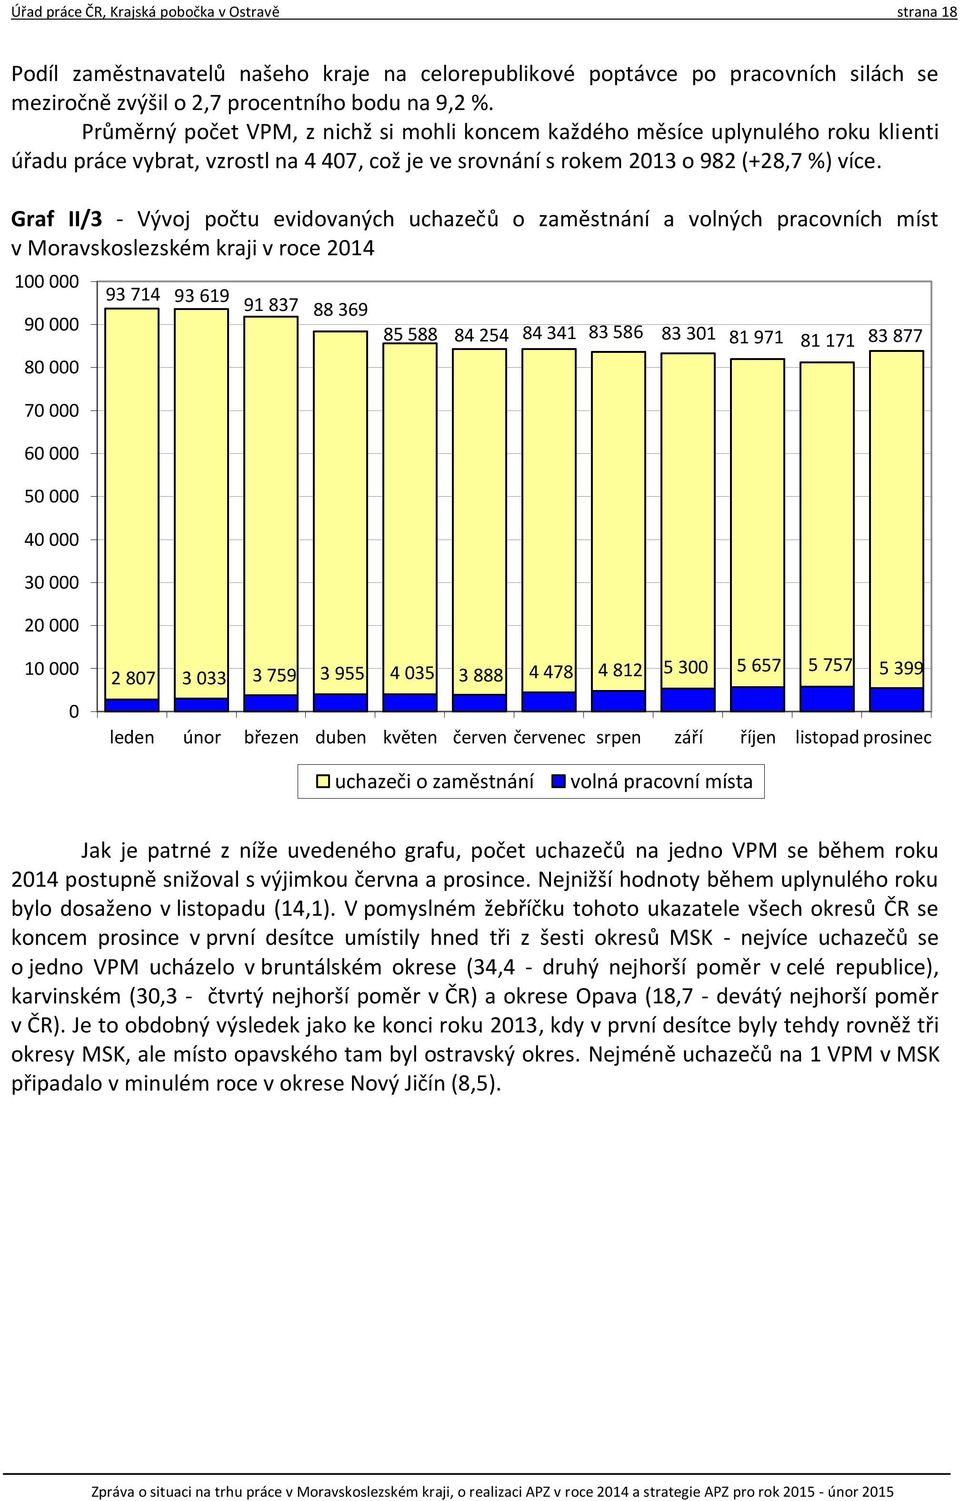 Graf II/3 - Vývoj počtu evidovaných uchazečů o zaměstnání a volných pracovních míst v Moravskoslezském kraji v roce 2014 100 000 90 000 80 000 70 000 60 000 50 000 40 000 30 000 20 000 93 714 93 619